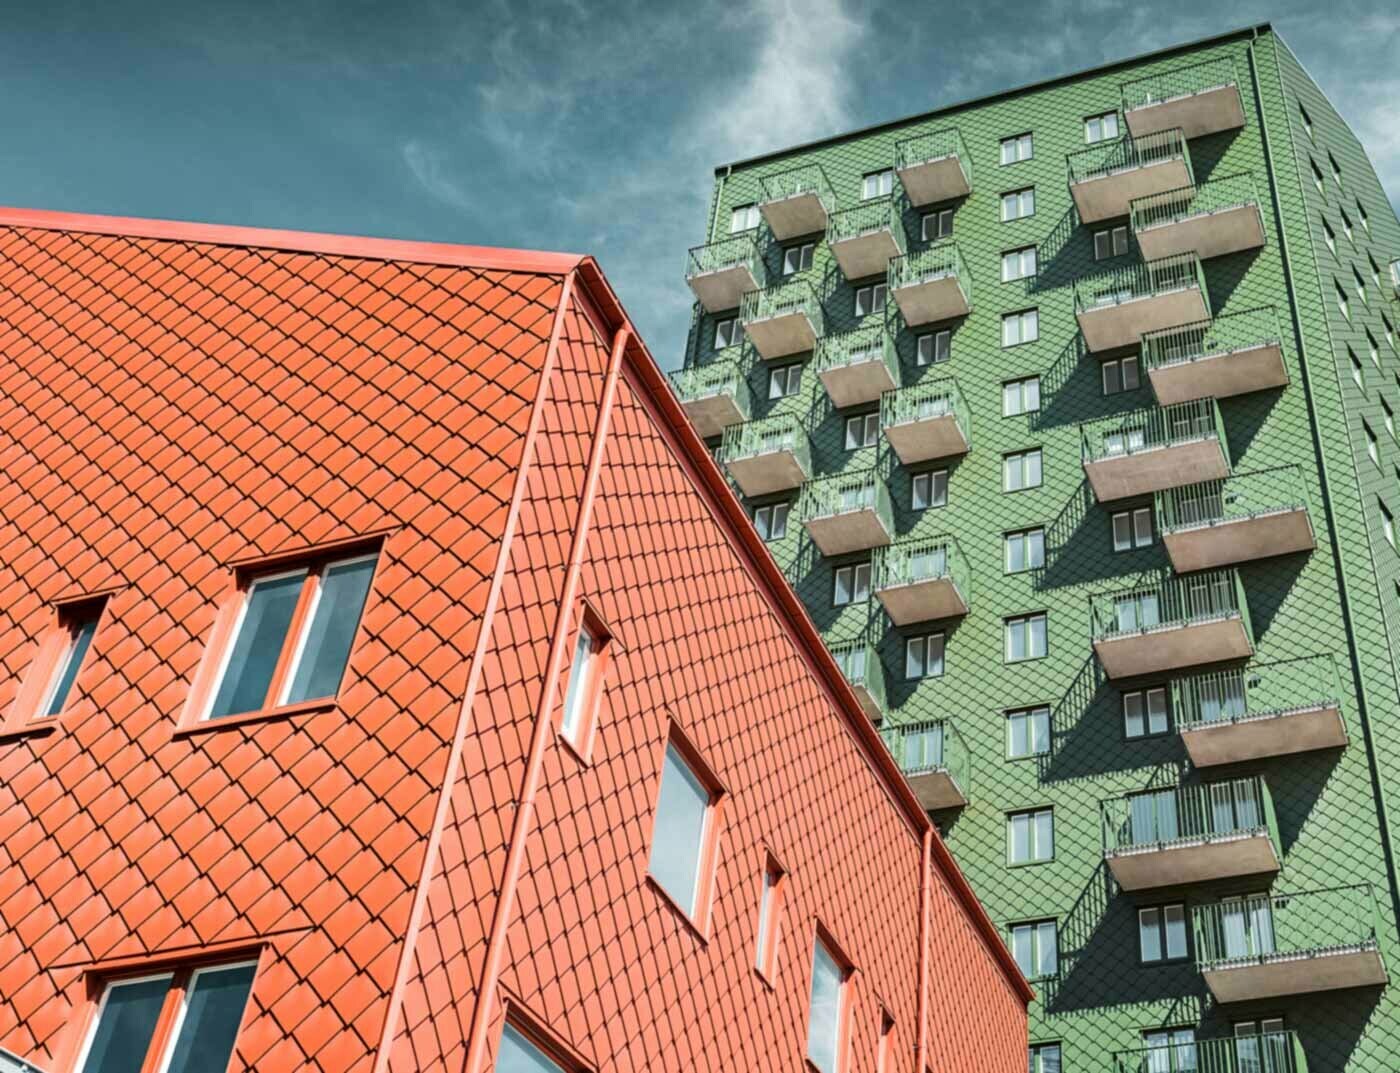 Habitations suédoises avec balcons et losanges de façade PREFA de couleur vert et rouge tuile.